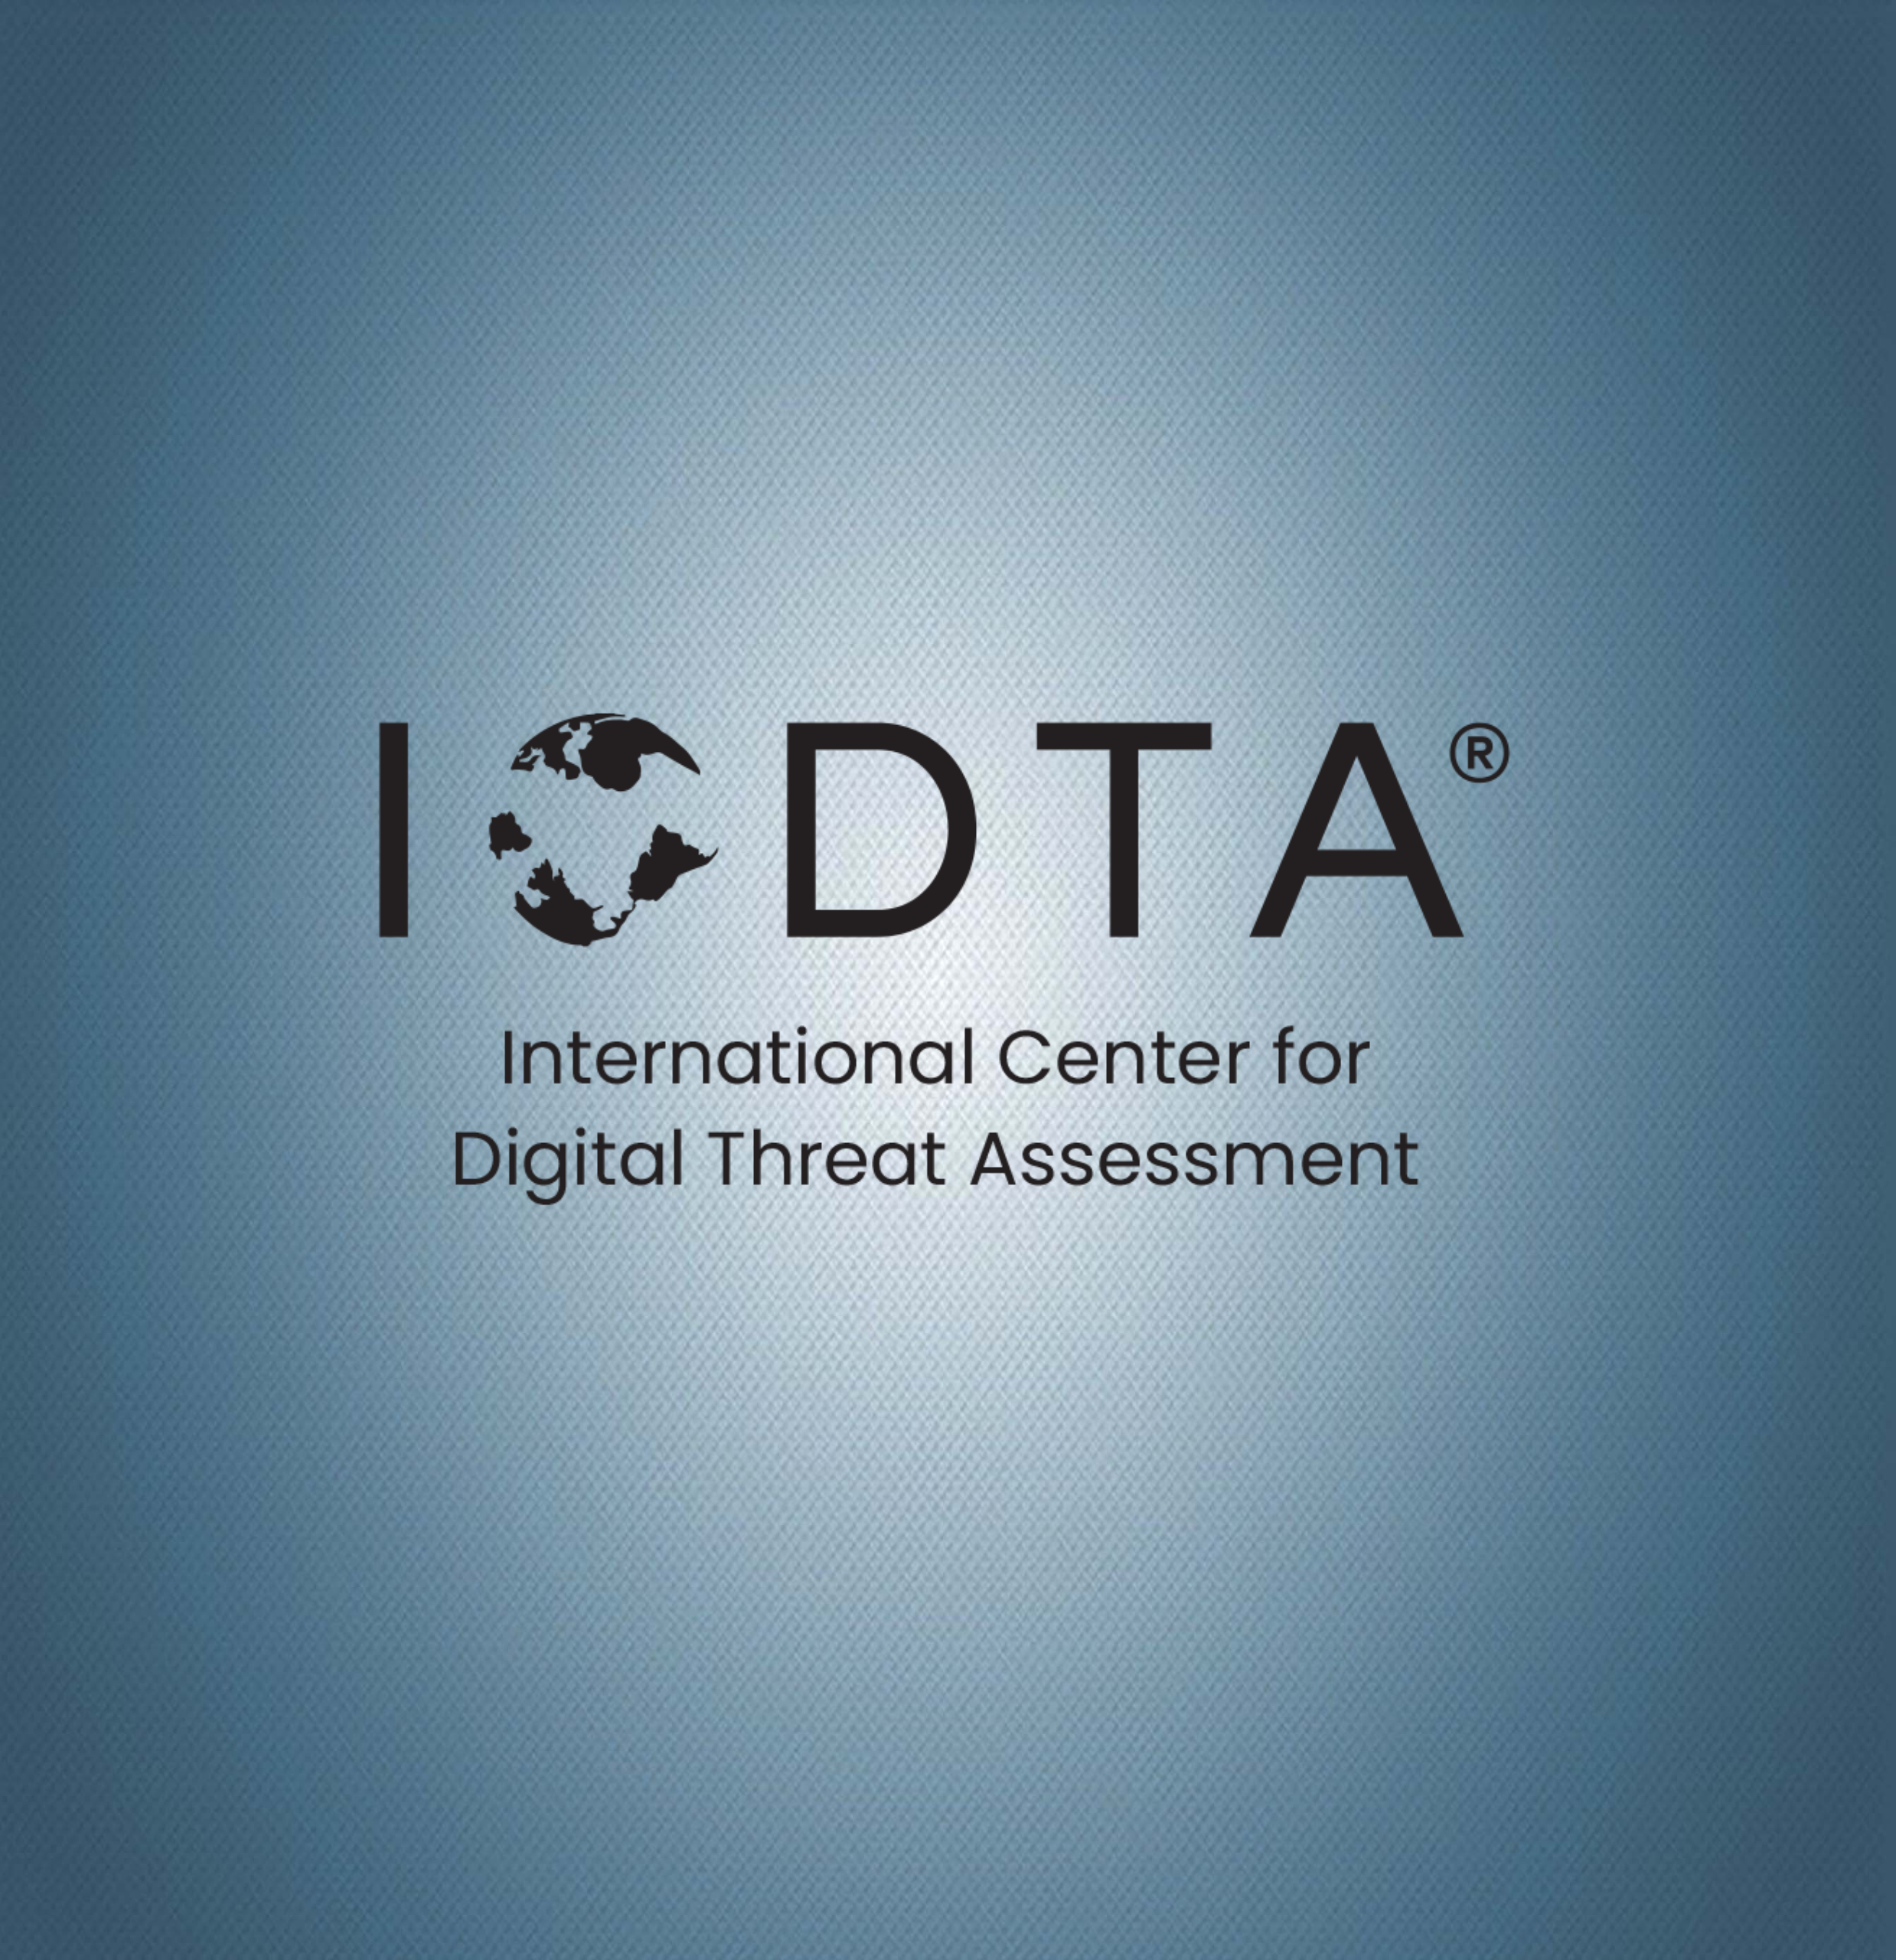 ICDTA® - Our Team